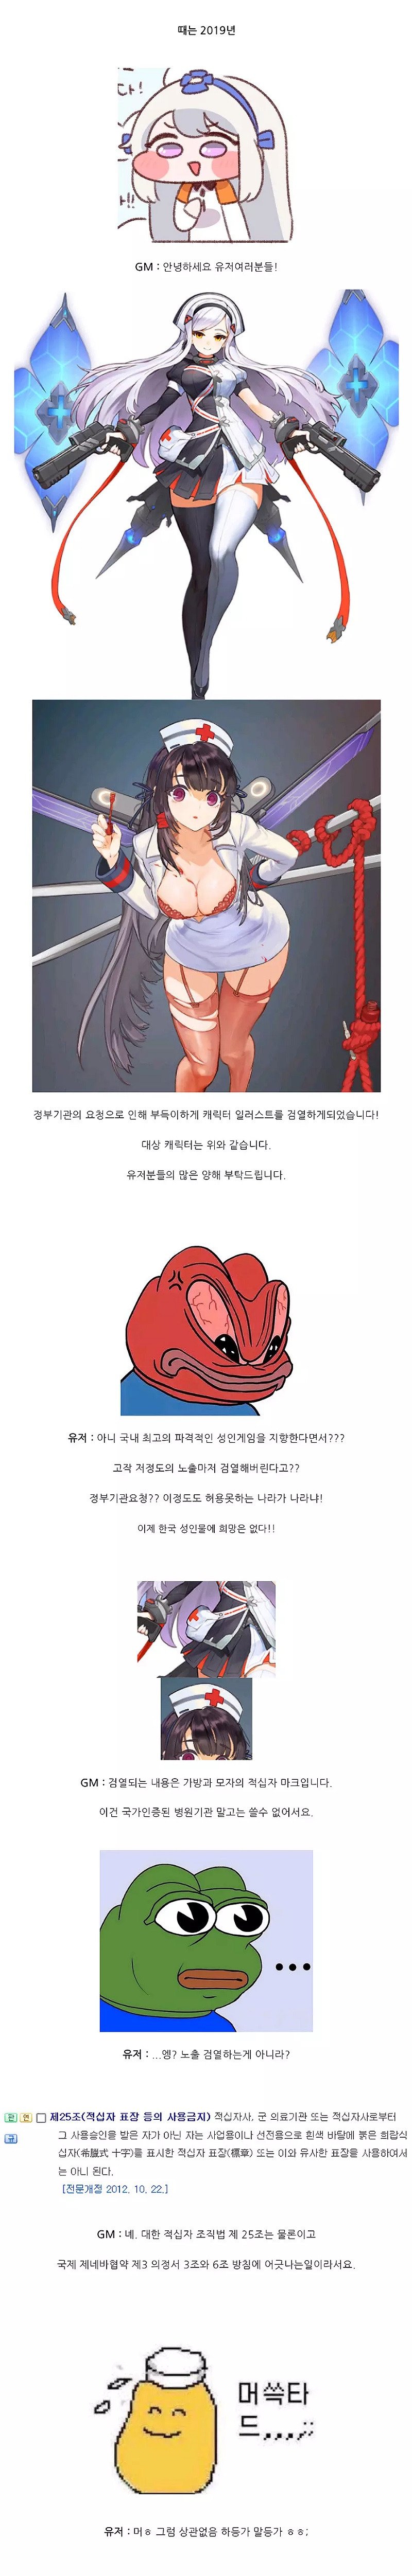 한국의 게임 일러스트 검열